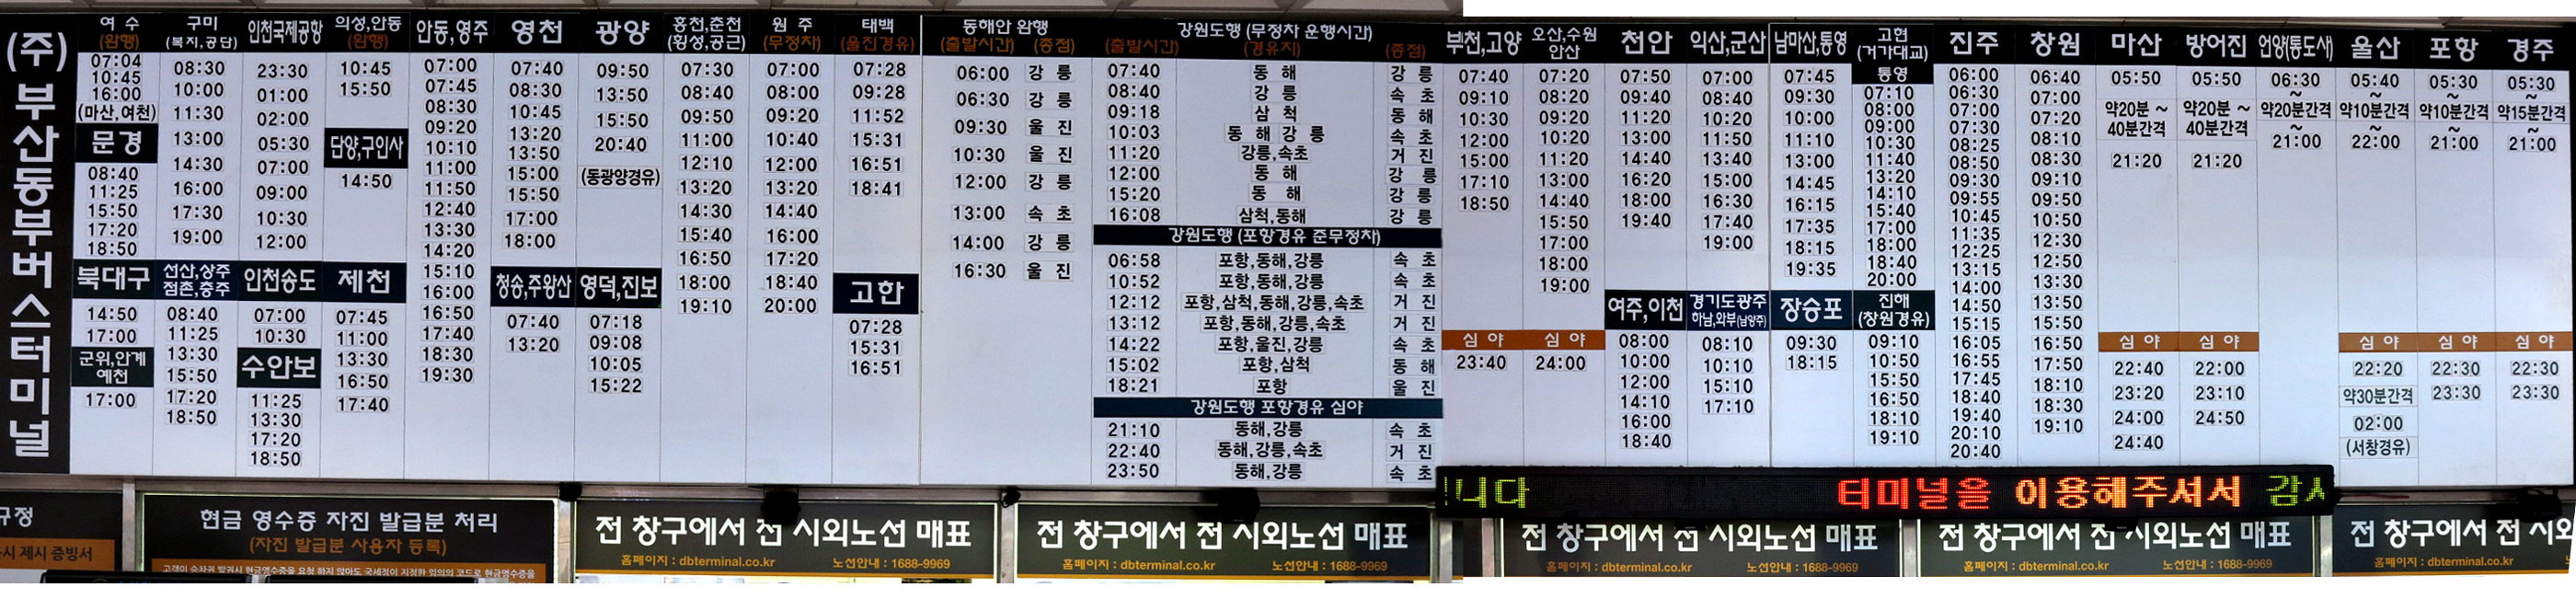 釜山総合バスセンター、市外バス 発車時刻表 2013年9月4日現在